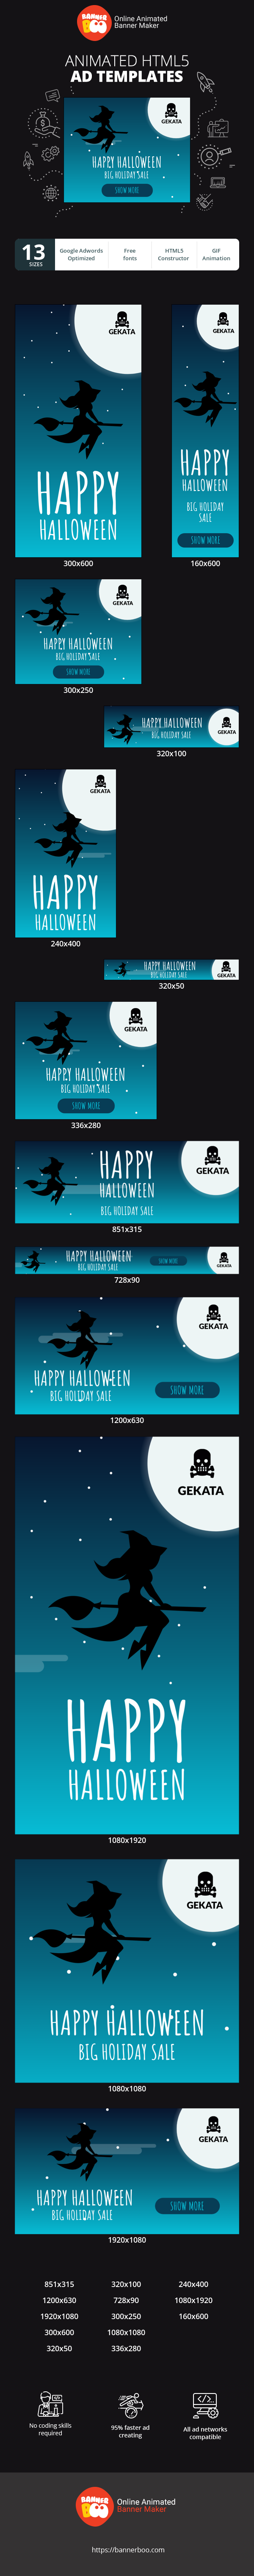 Szablon reklamy banerowej — Happy Halloween  — Big Holiday Sale